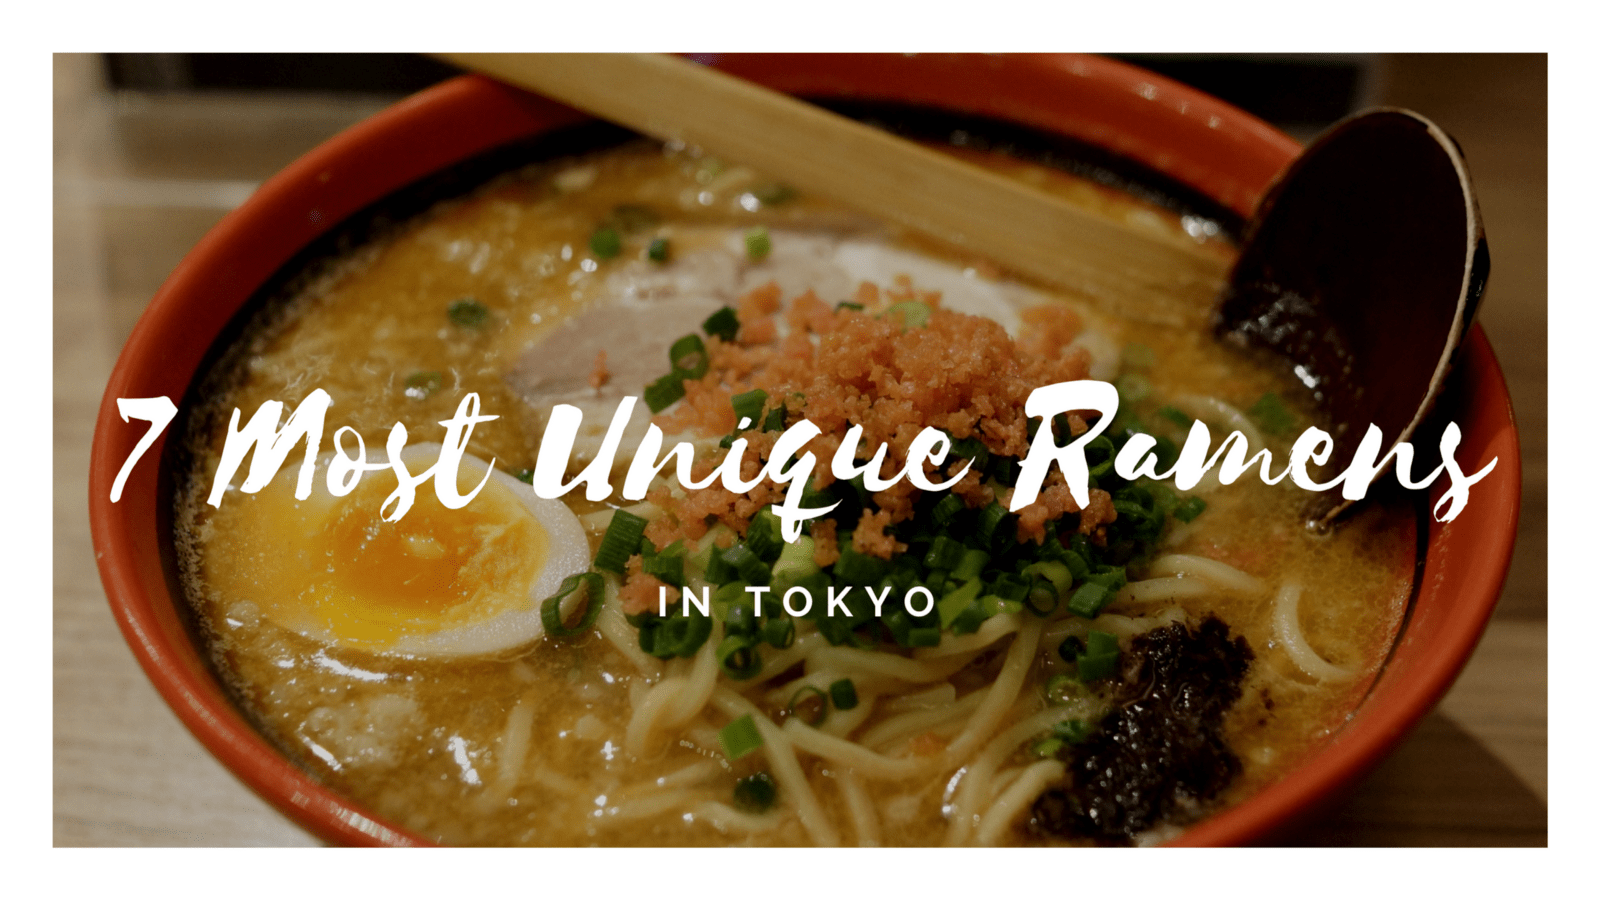 Best Unique Ramen in Tokyo